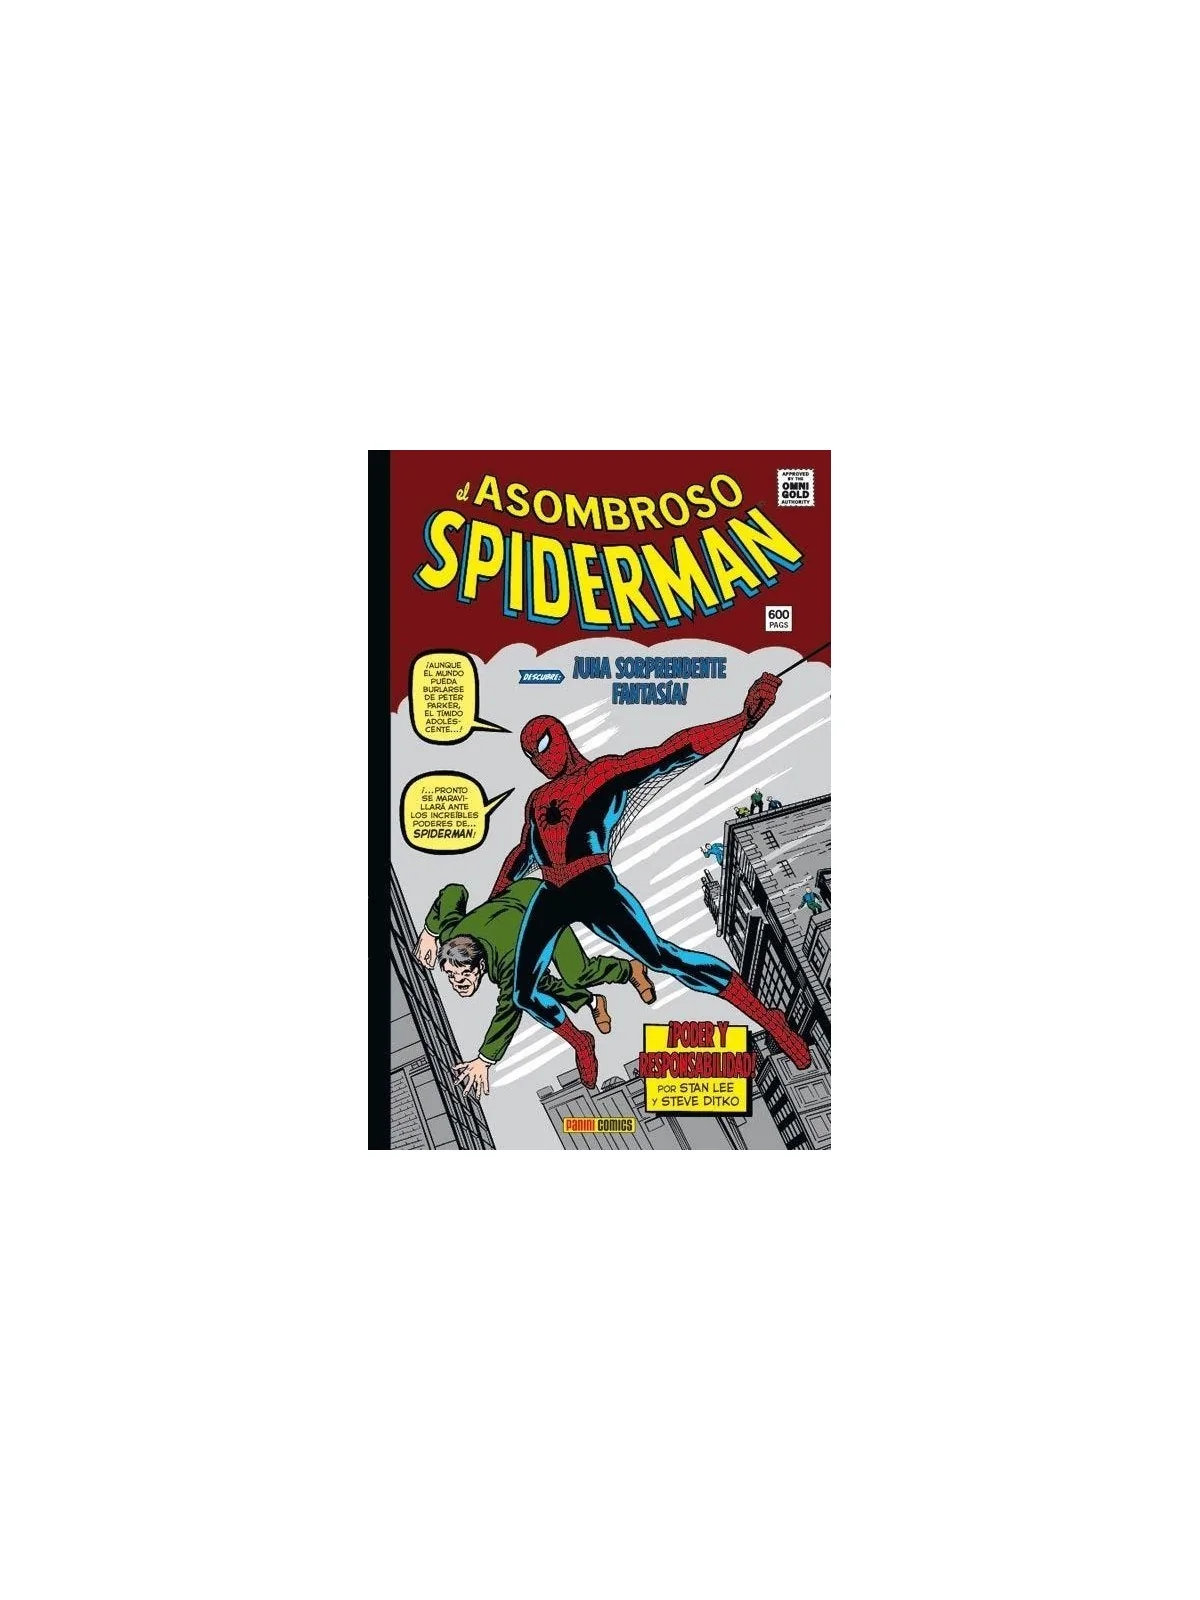 Comprar Marvel Gold: El Asombroso Spiderman 01 barato al mejor precio 